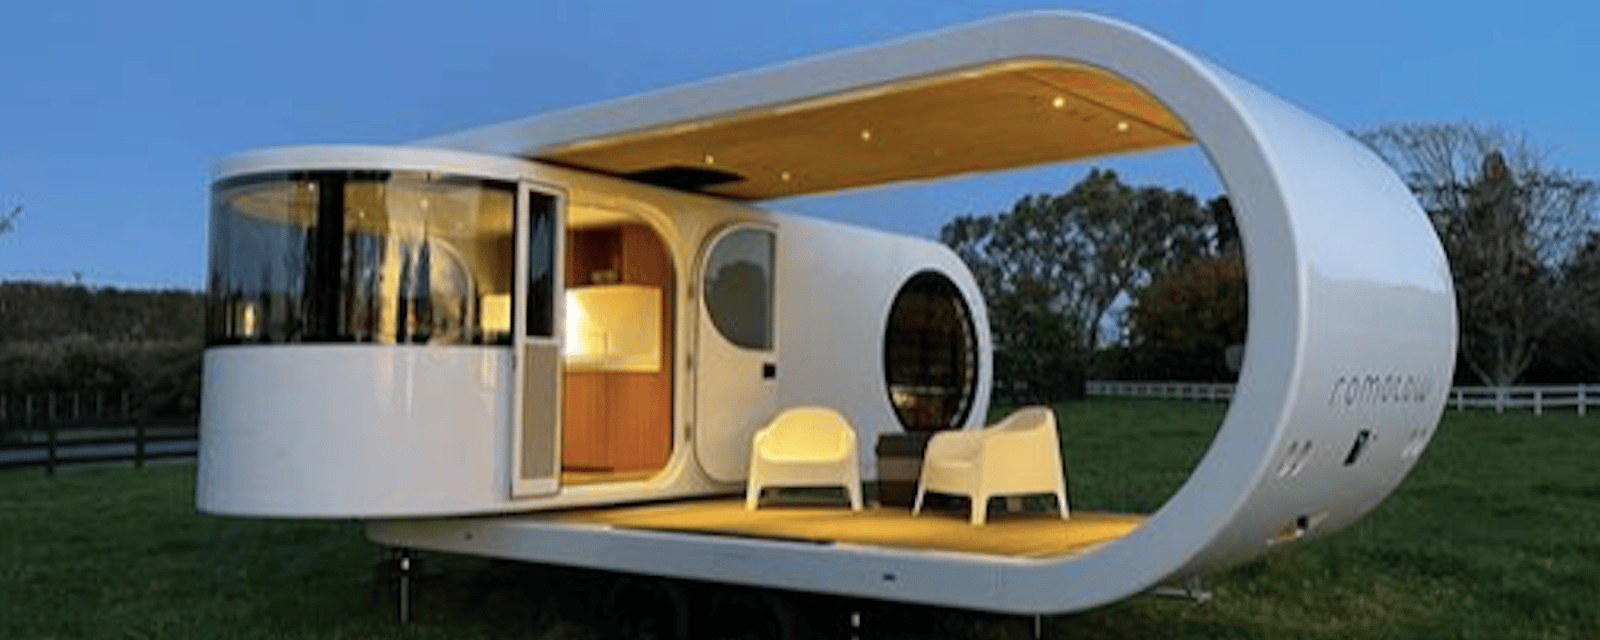 Cette caravane rotative se transforme en appartement avec terrasse